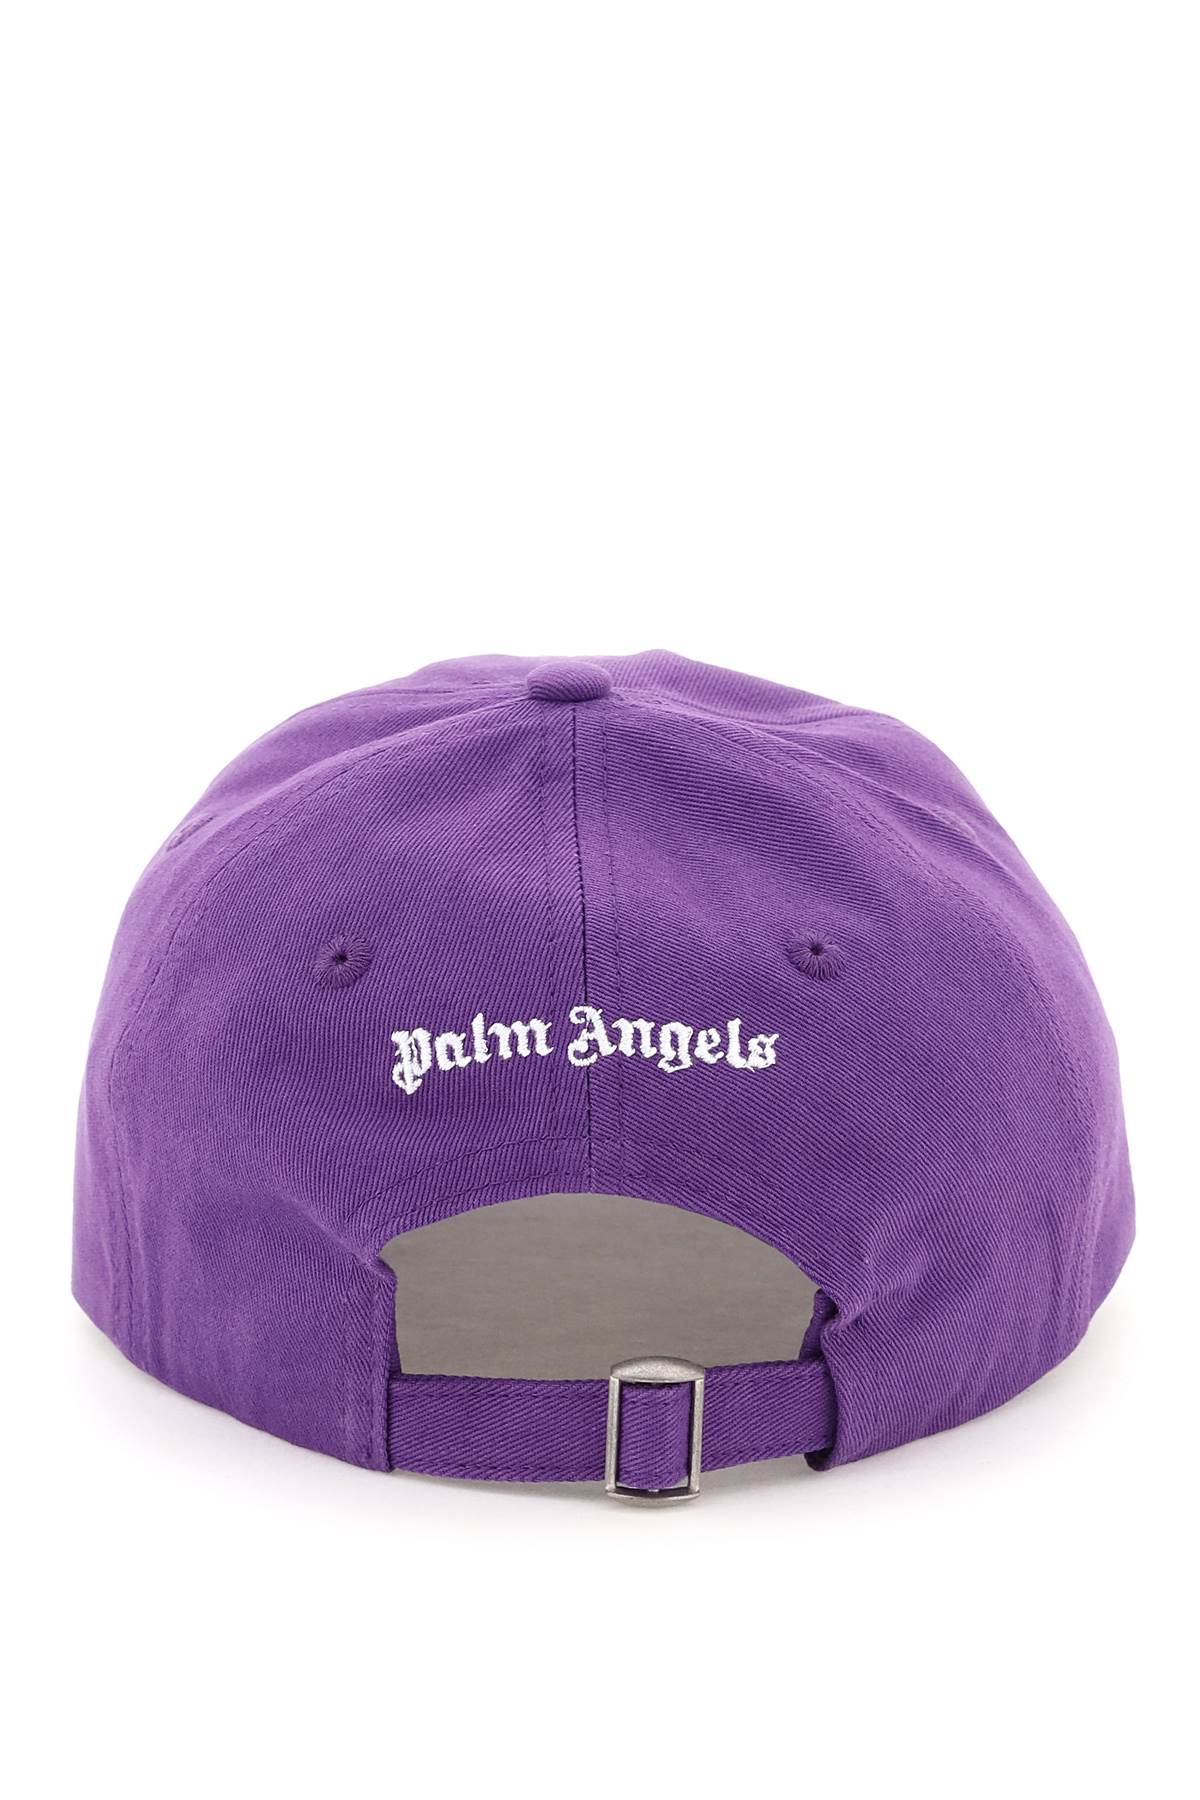 Palm Angels Palm angels logo baseball cap